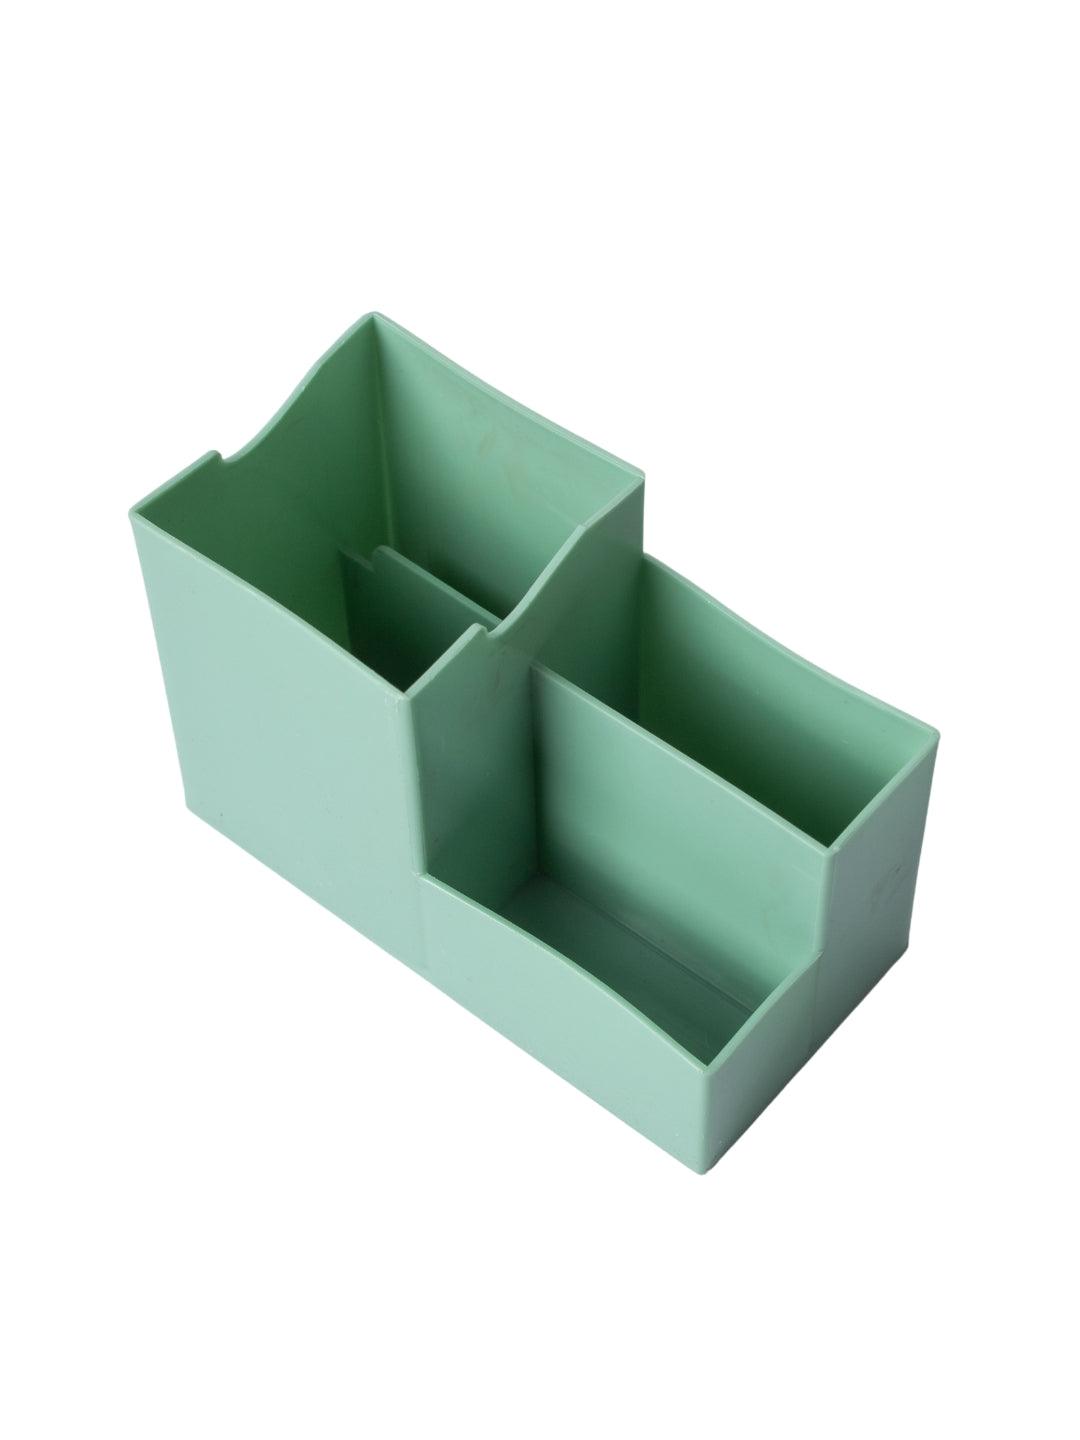 Multi-Purpose Desk Organizer with 4 Compartments - Light Green